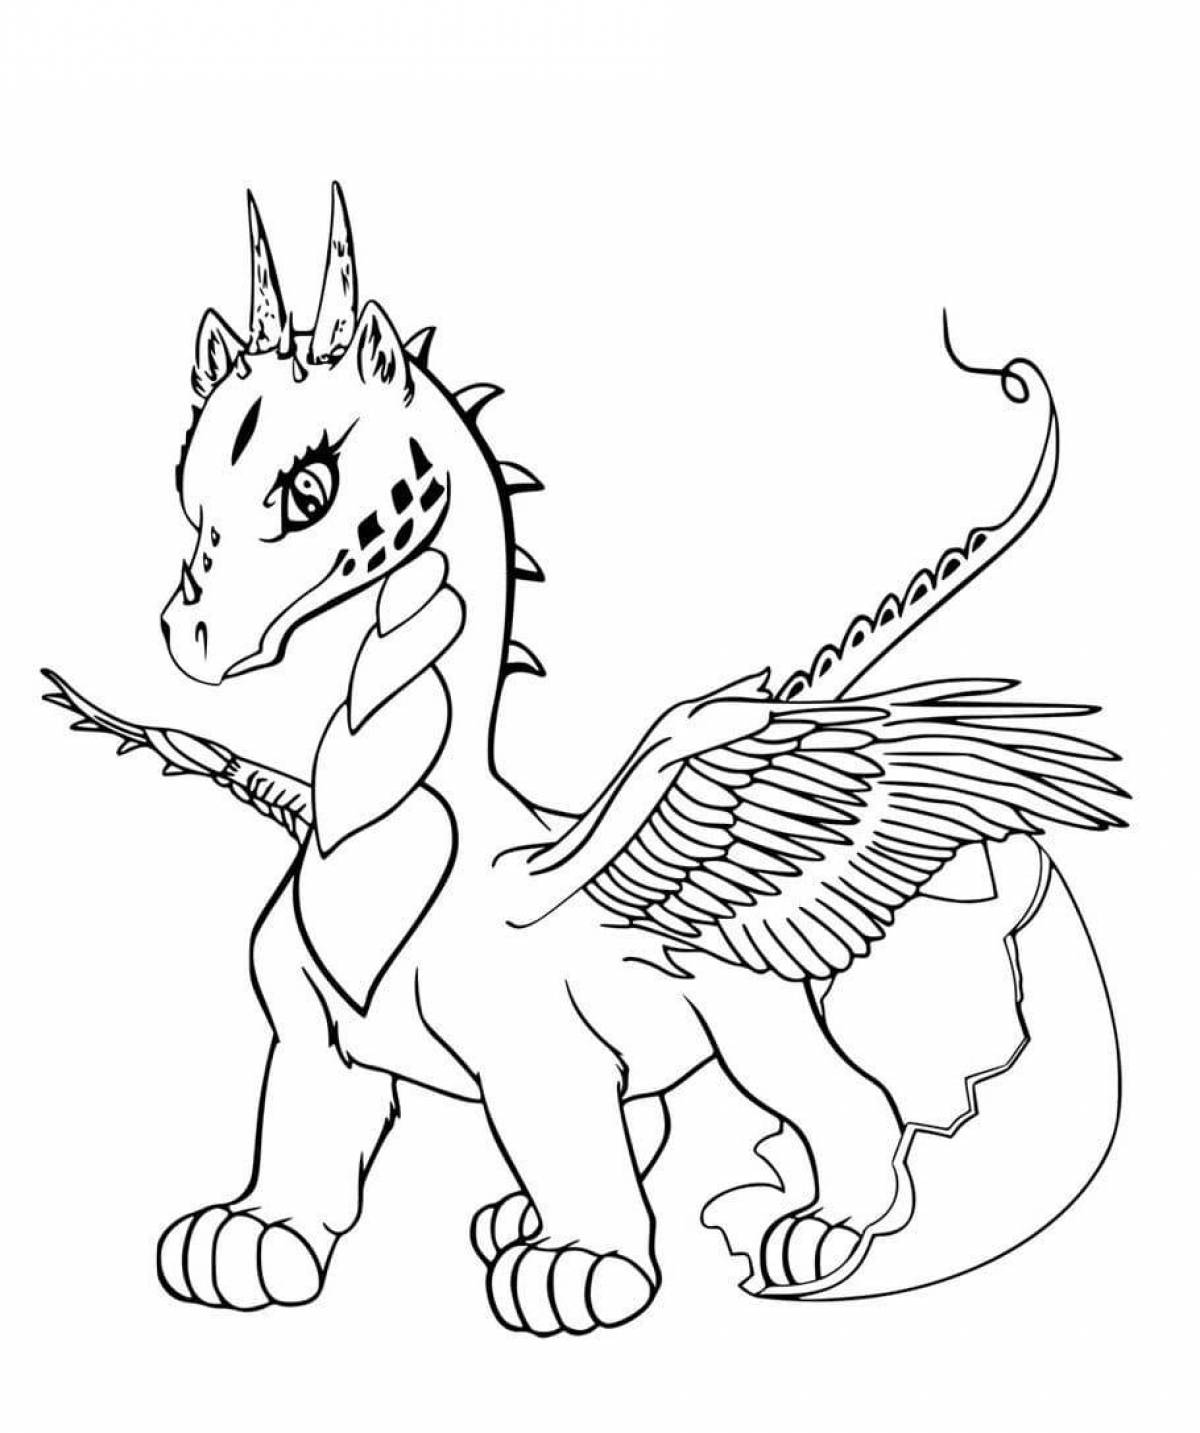 Причудливая раскраска дракона для детей